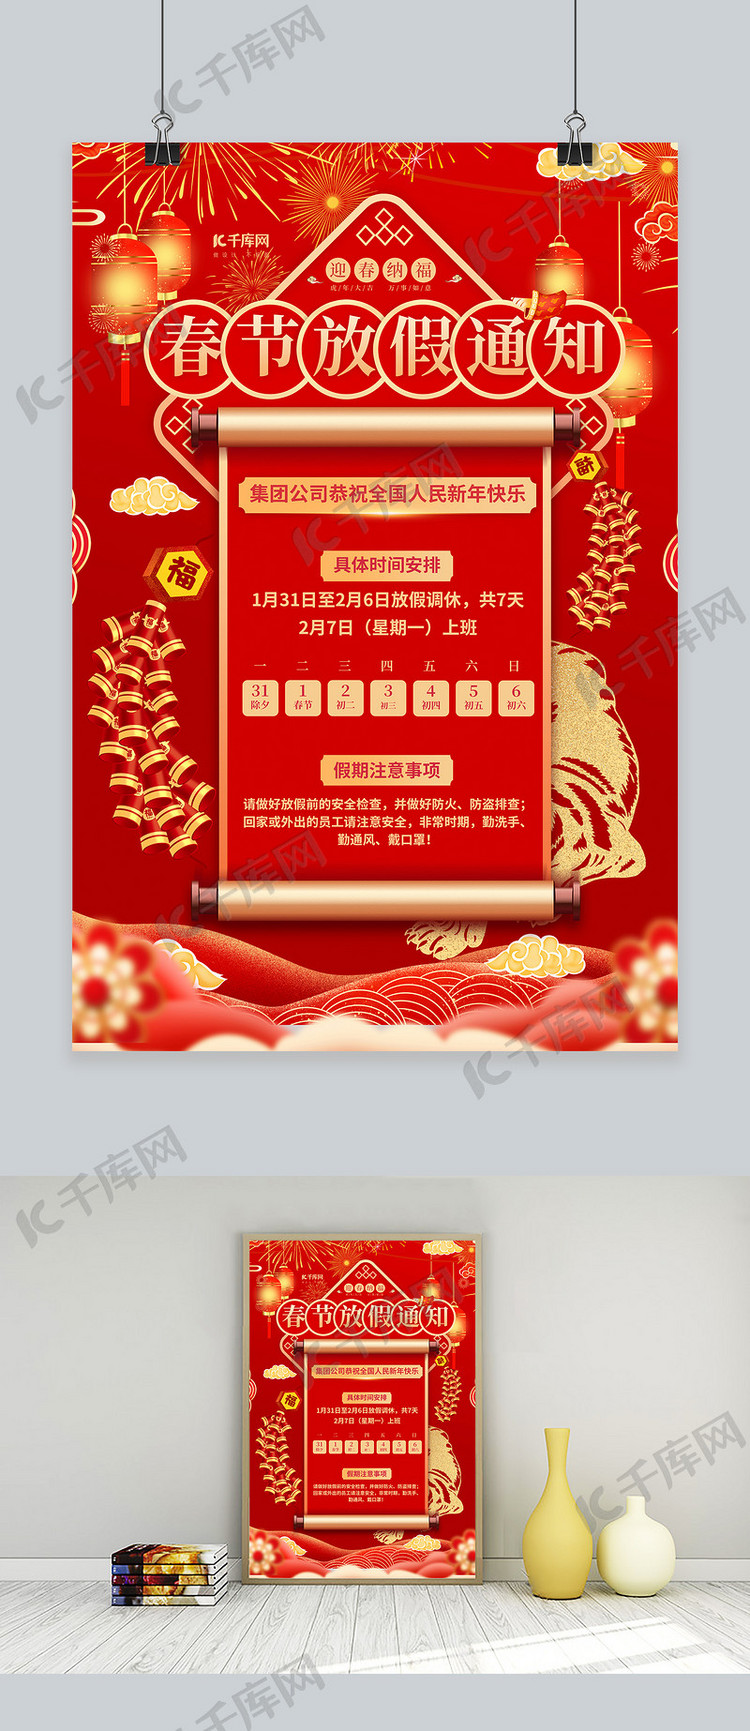 春节放假通知红色创意海报